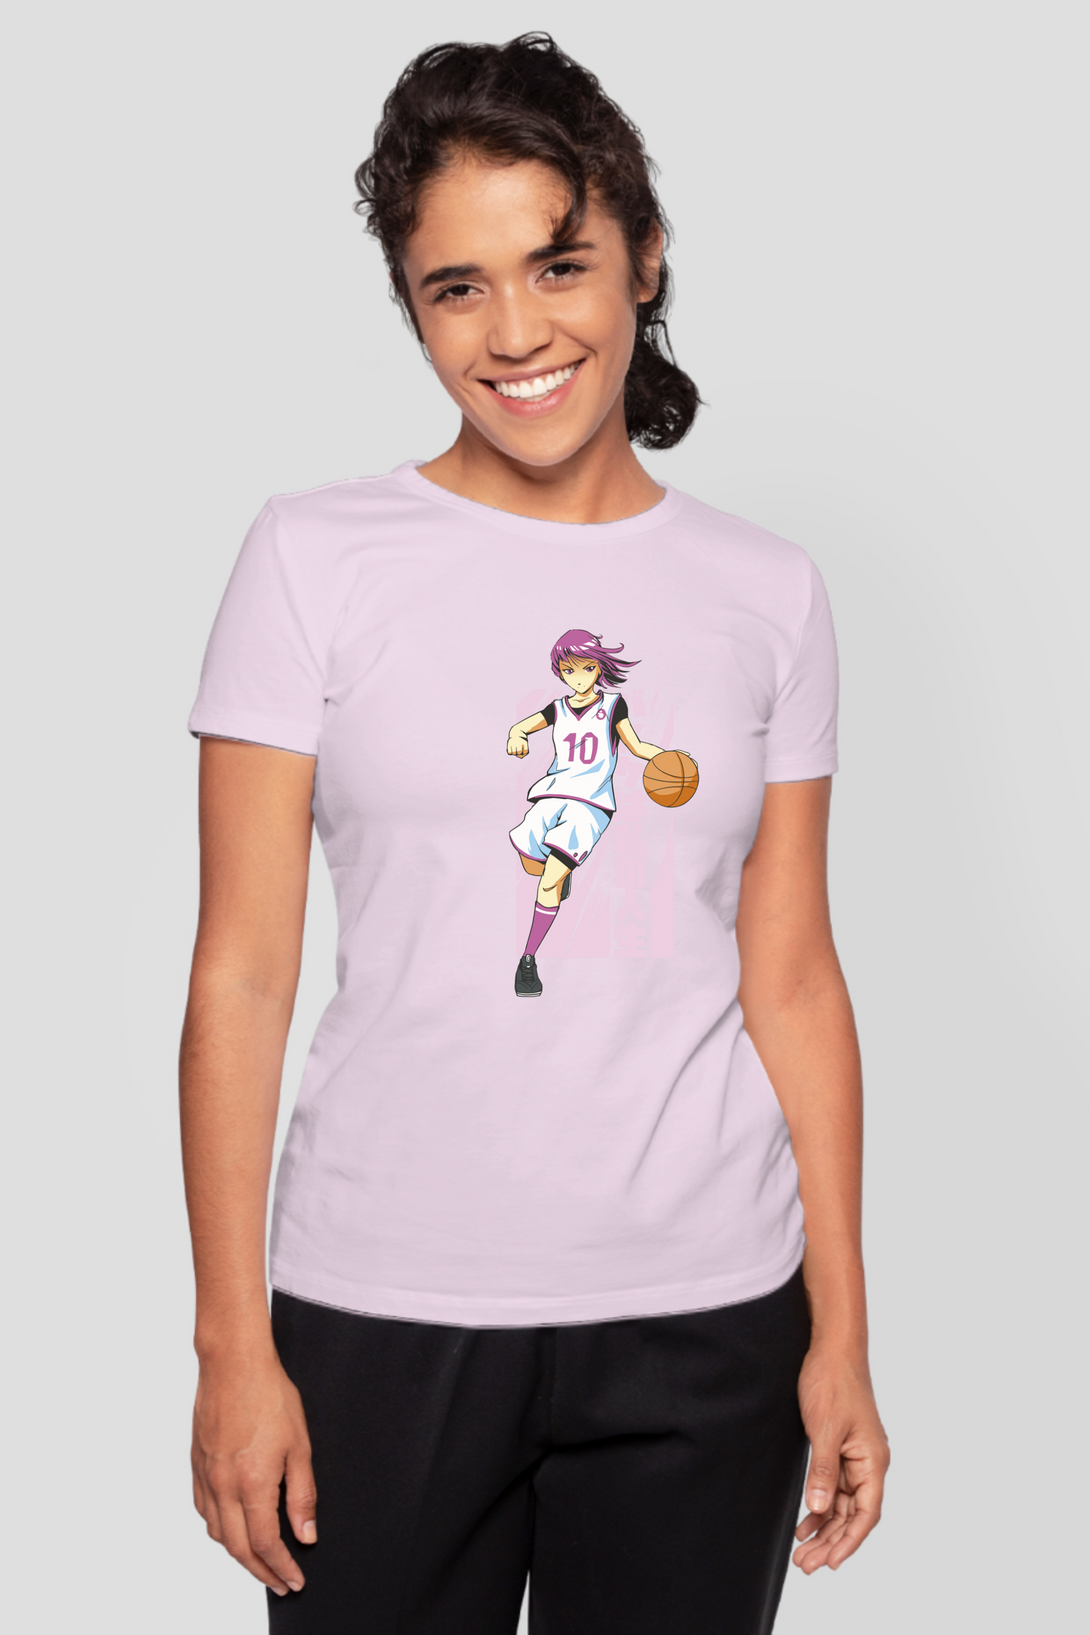 Anime Basketball Printed T-Shirt For Women - WowWaves - 9